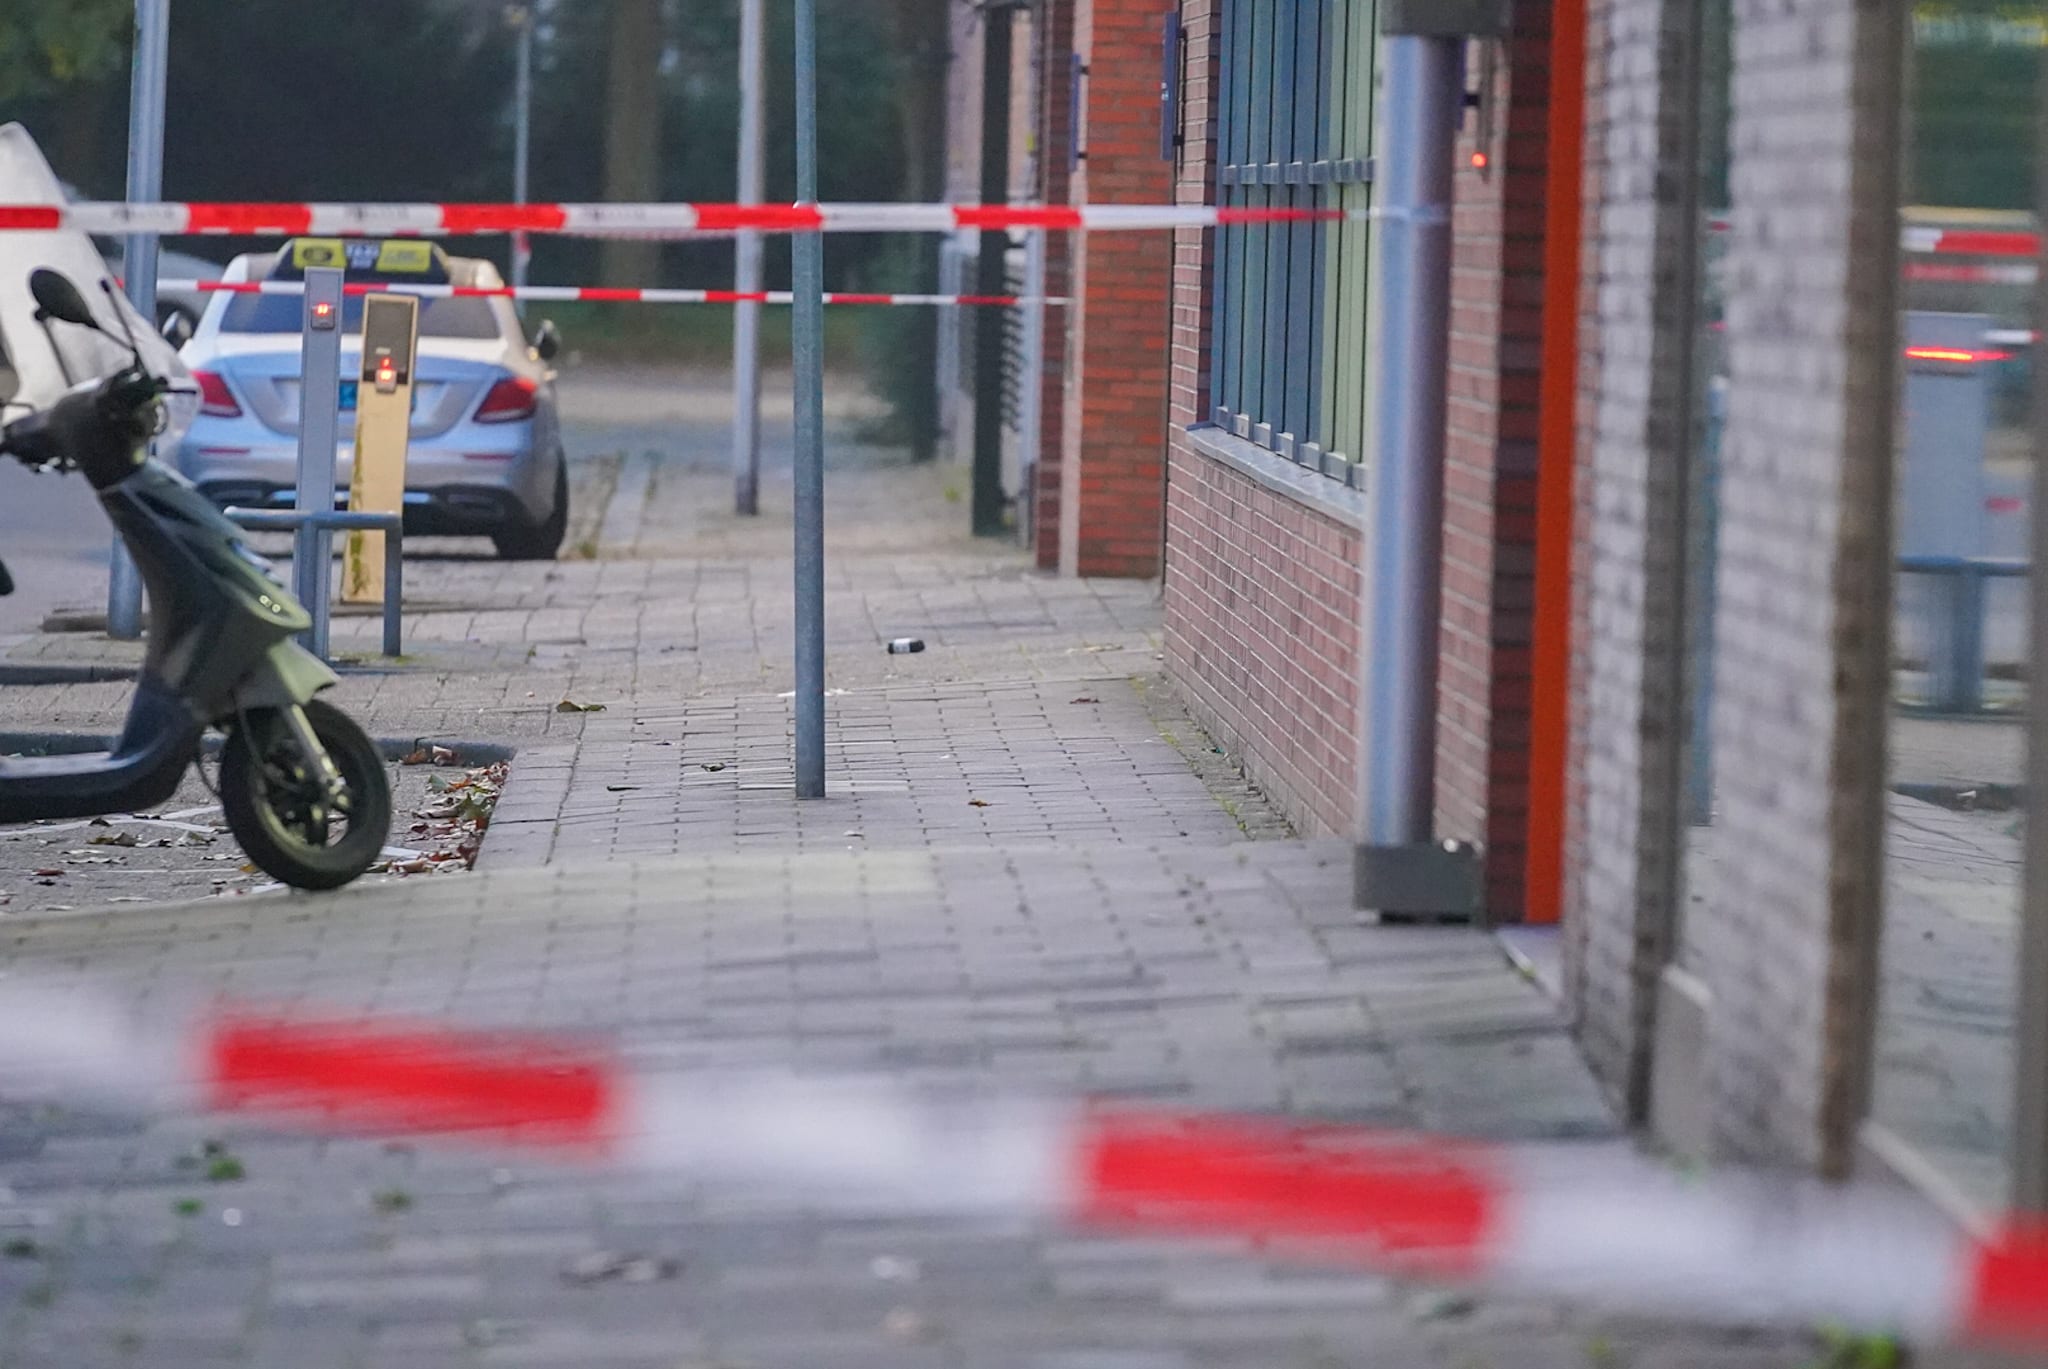 Verdacht pakketje bij Utrechts politiebureau blijkt loos alarm